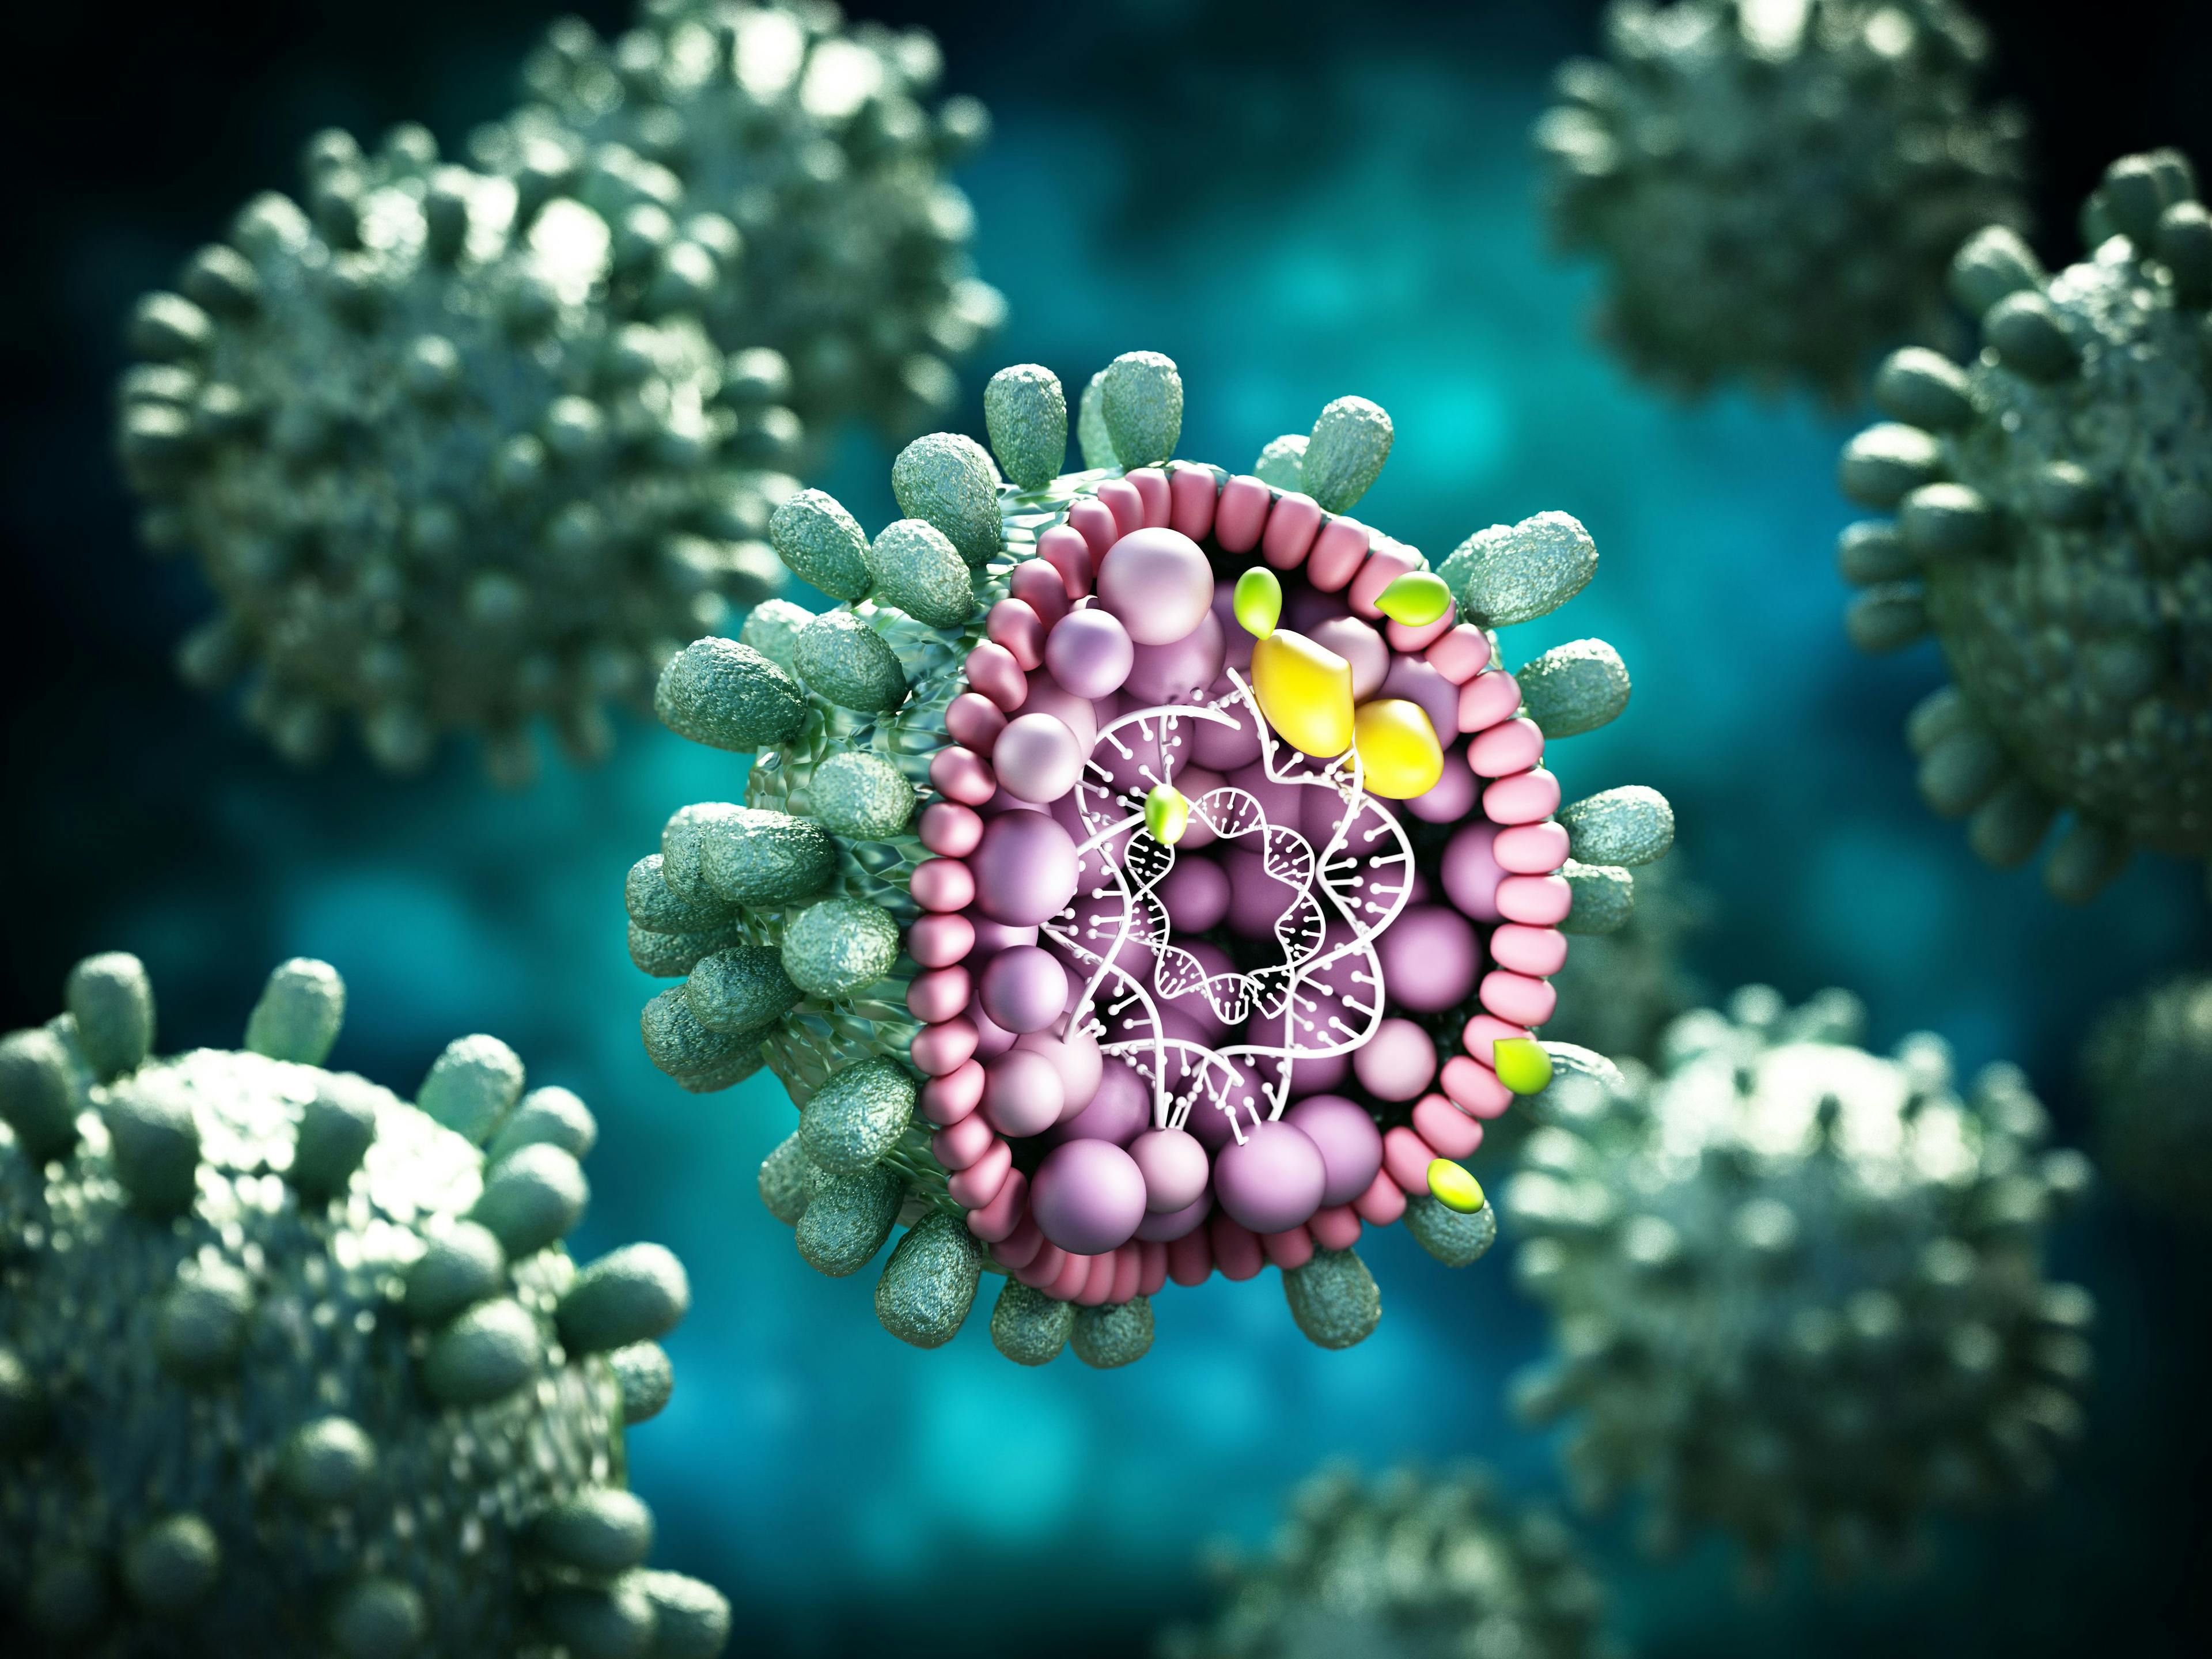 Structural detail of Hepatitis B virus on blue-green background. 3D illustration | Image Credit: Destina - stock.adobe.com